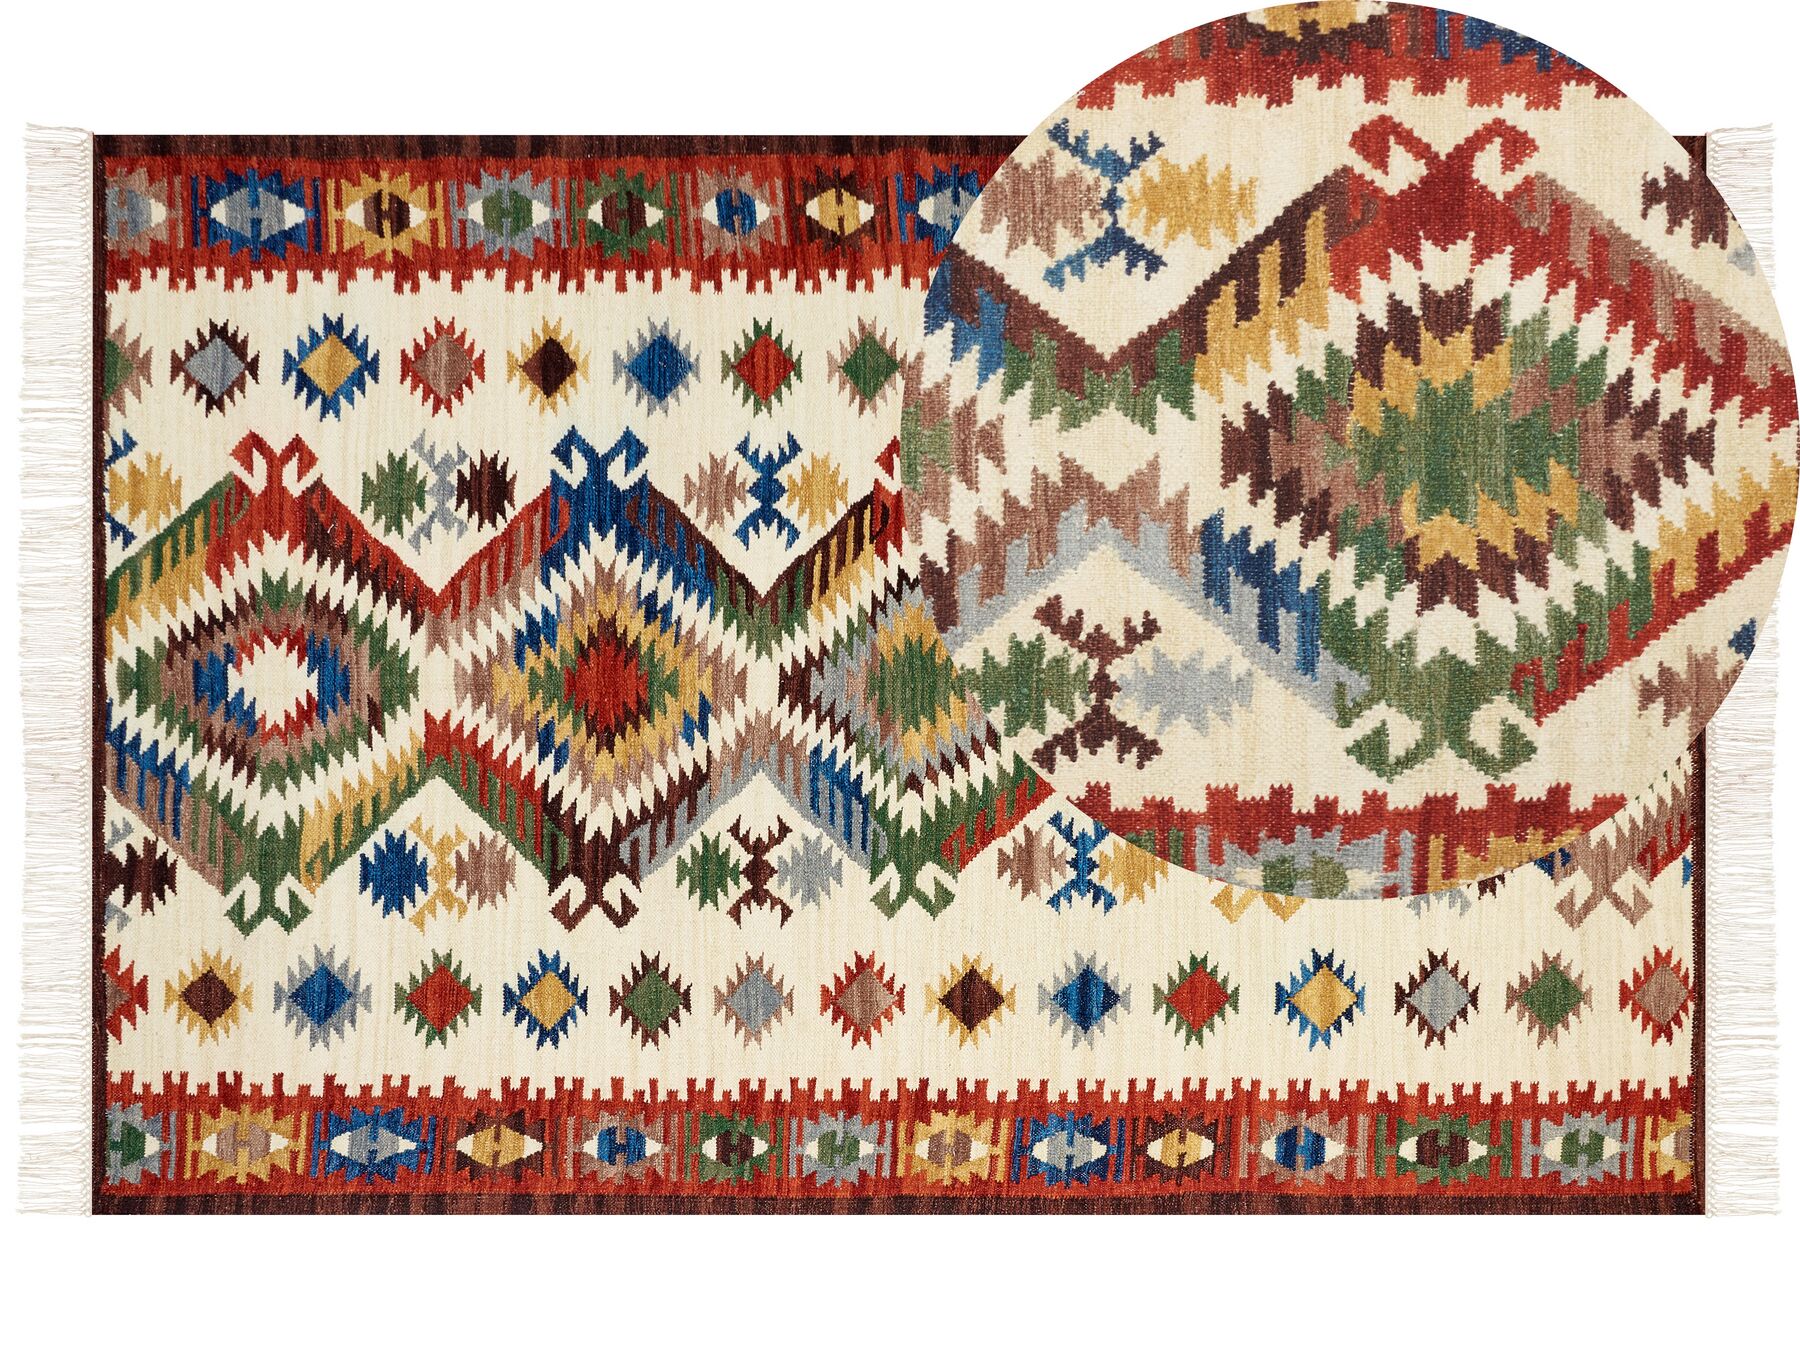 Vlněný kelimový koberec 200 x 300 cm vícebarevný AREVIK_859507